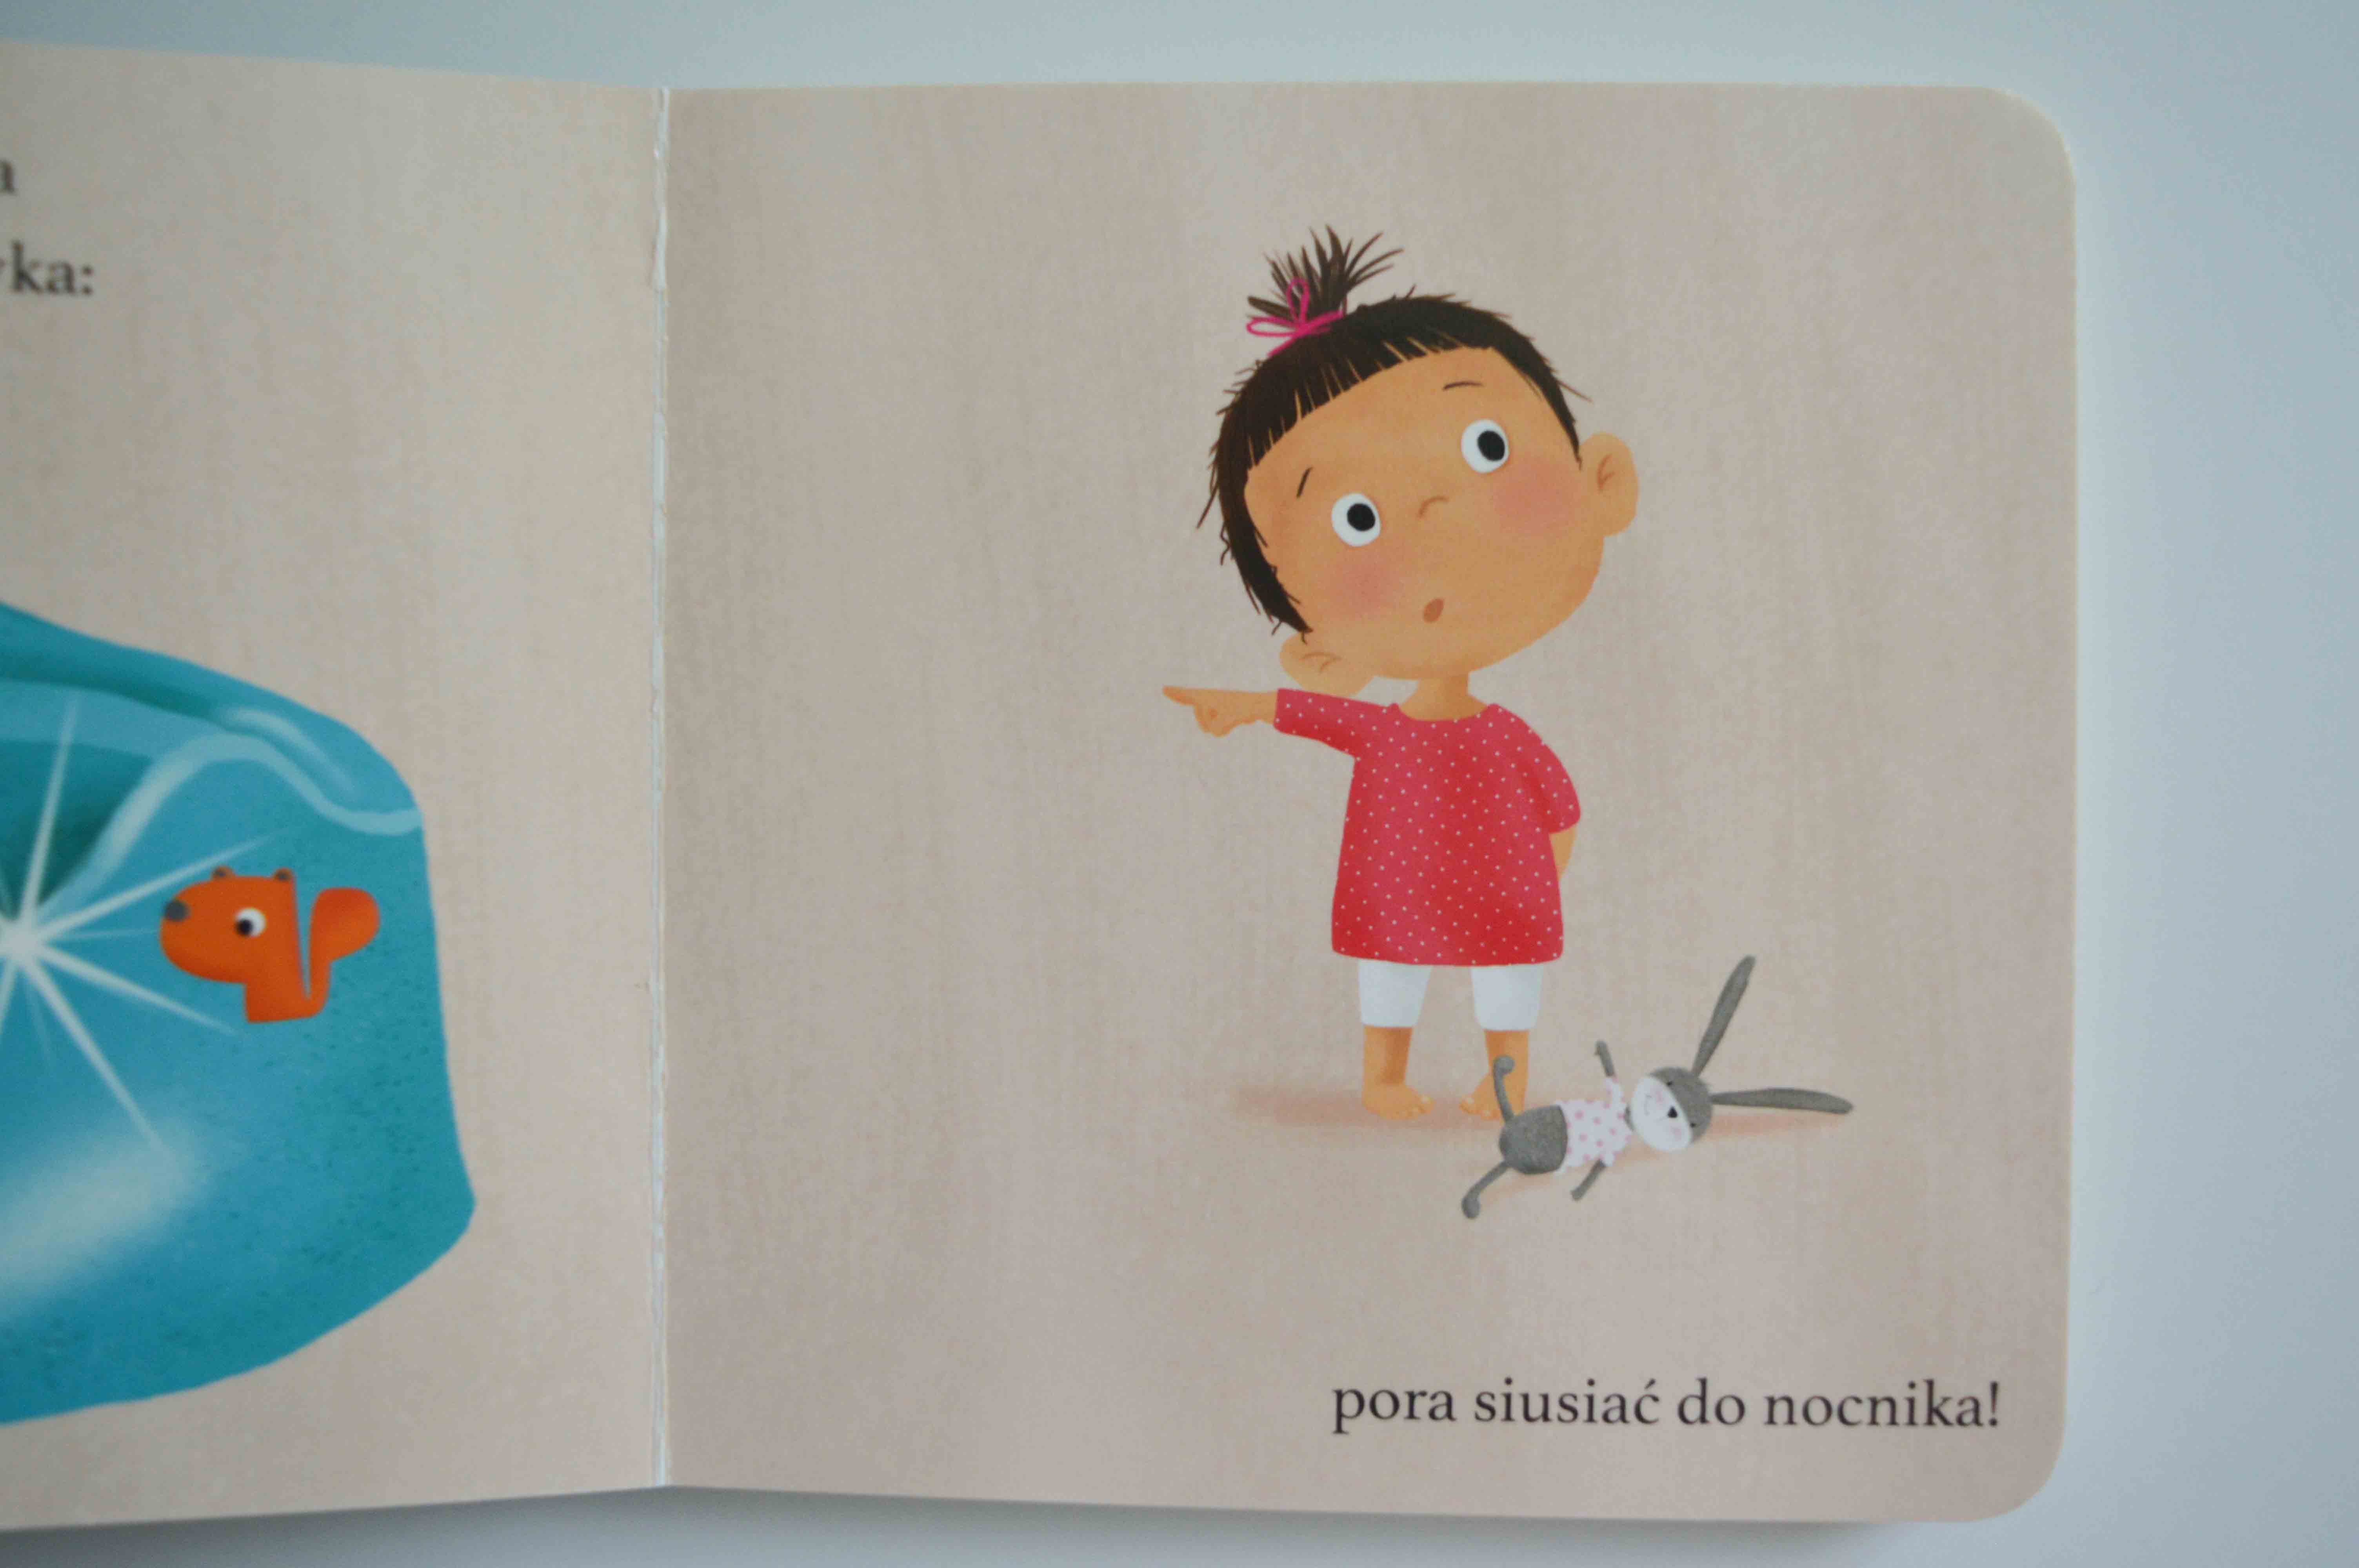 Nauka sikania do nocnika - oduczanie dziecko pieluchy - odpieluchowanie - książka dla 2 latka